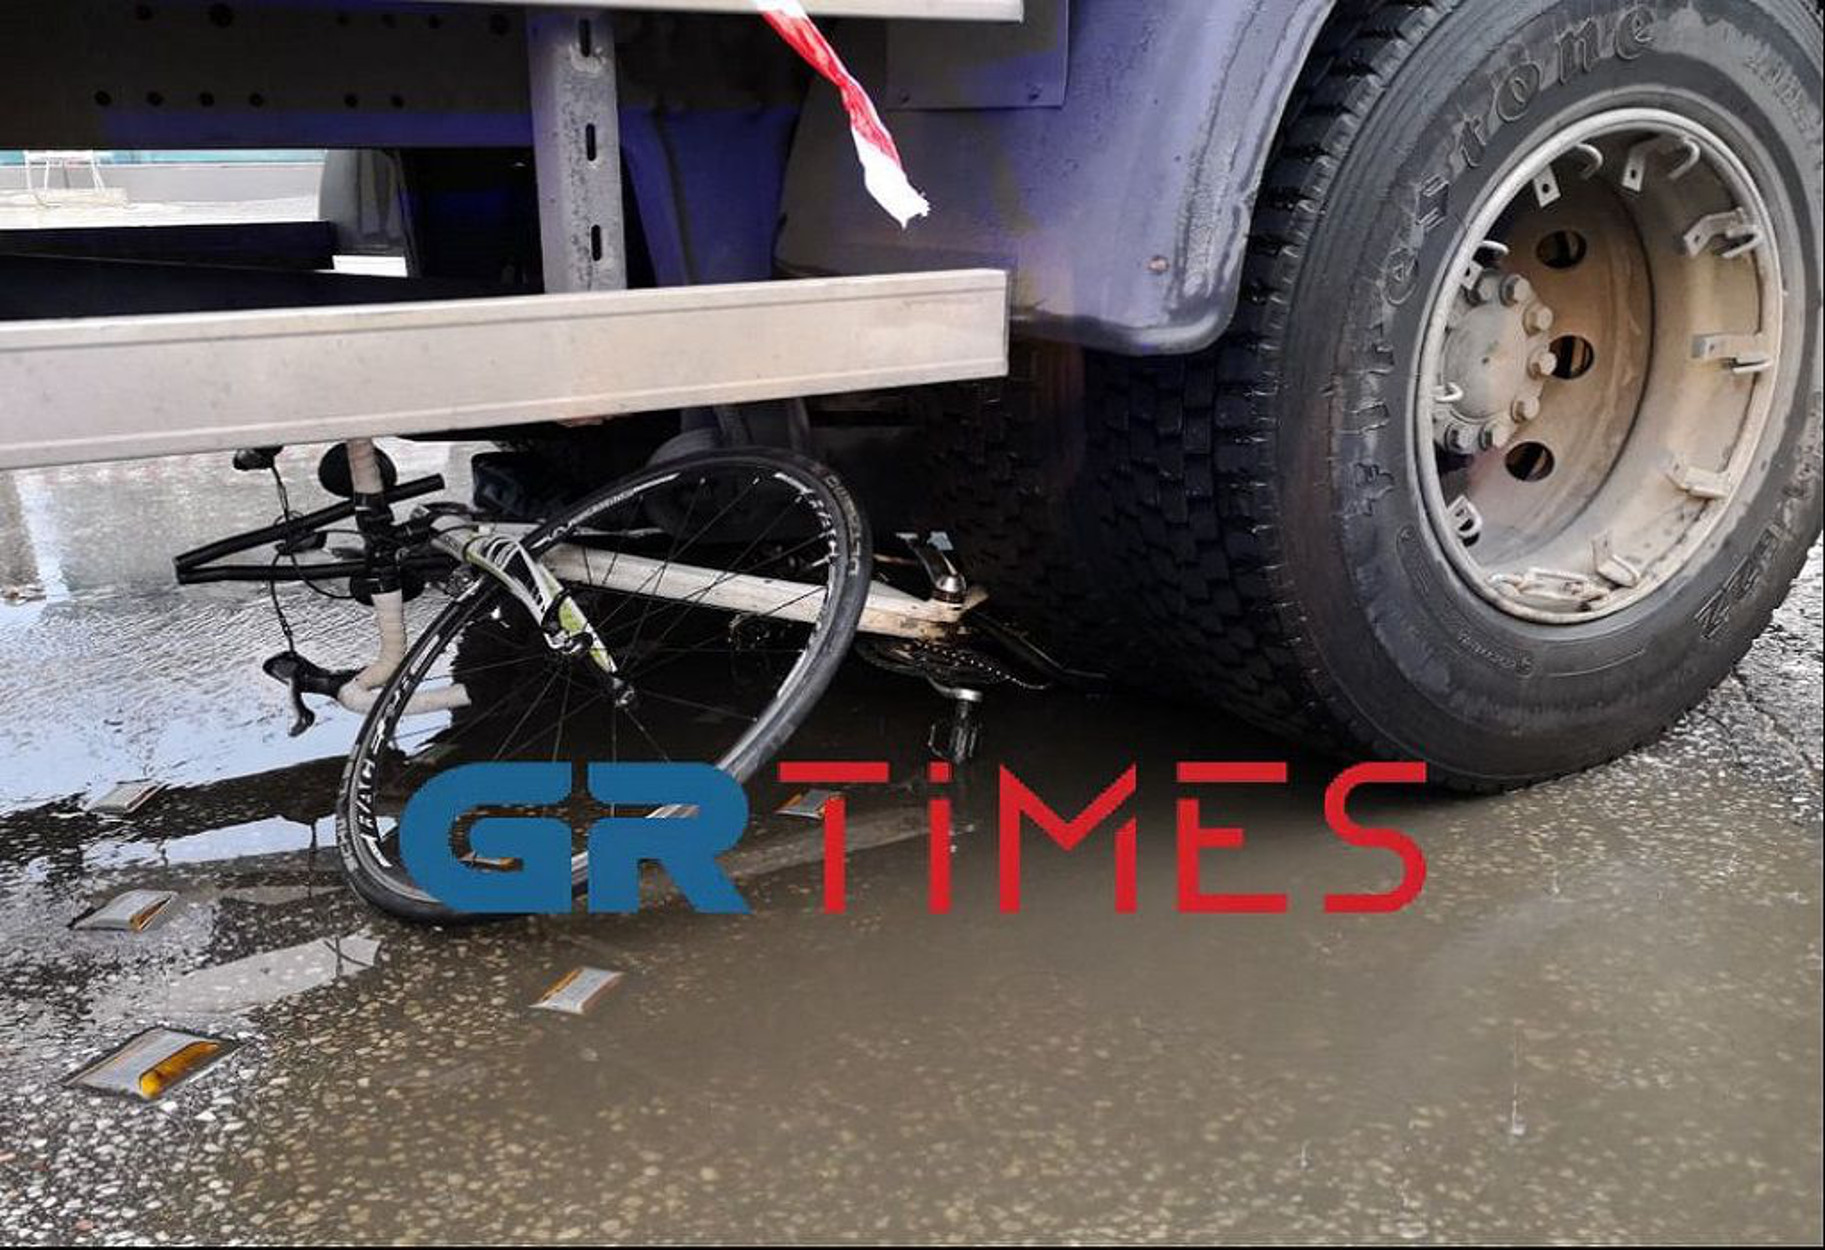 Θεσσαλονίκη: Φορτηγό παρέσυρε ποδηλάτισσα – Σε σοβαρή κατάσταση η κοπέλα στο νοσοκομείο